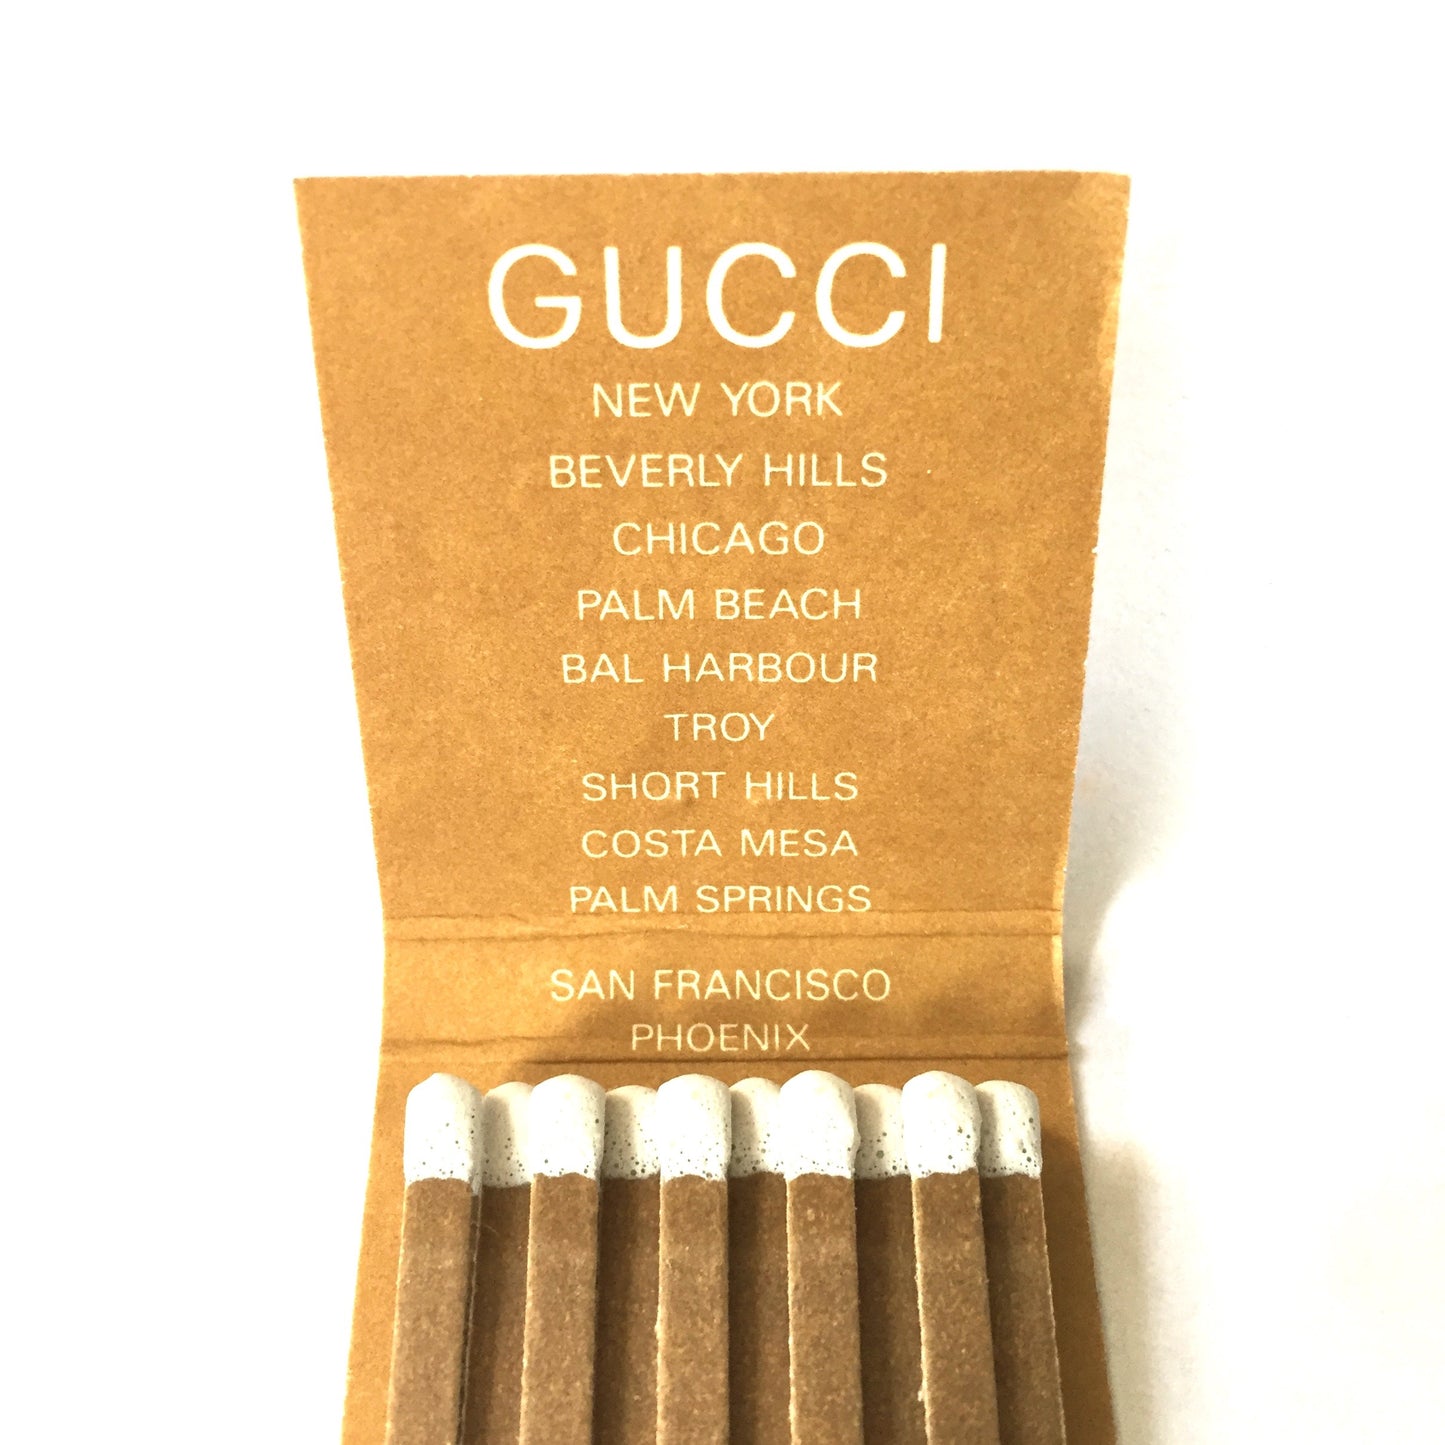 Gucci - Vintage Matchbook